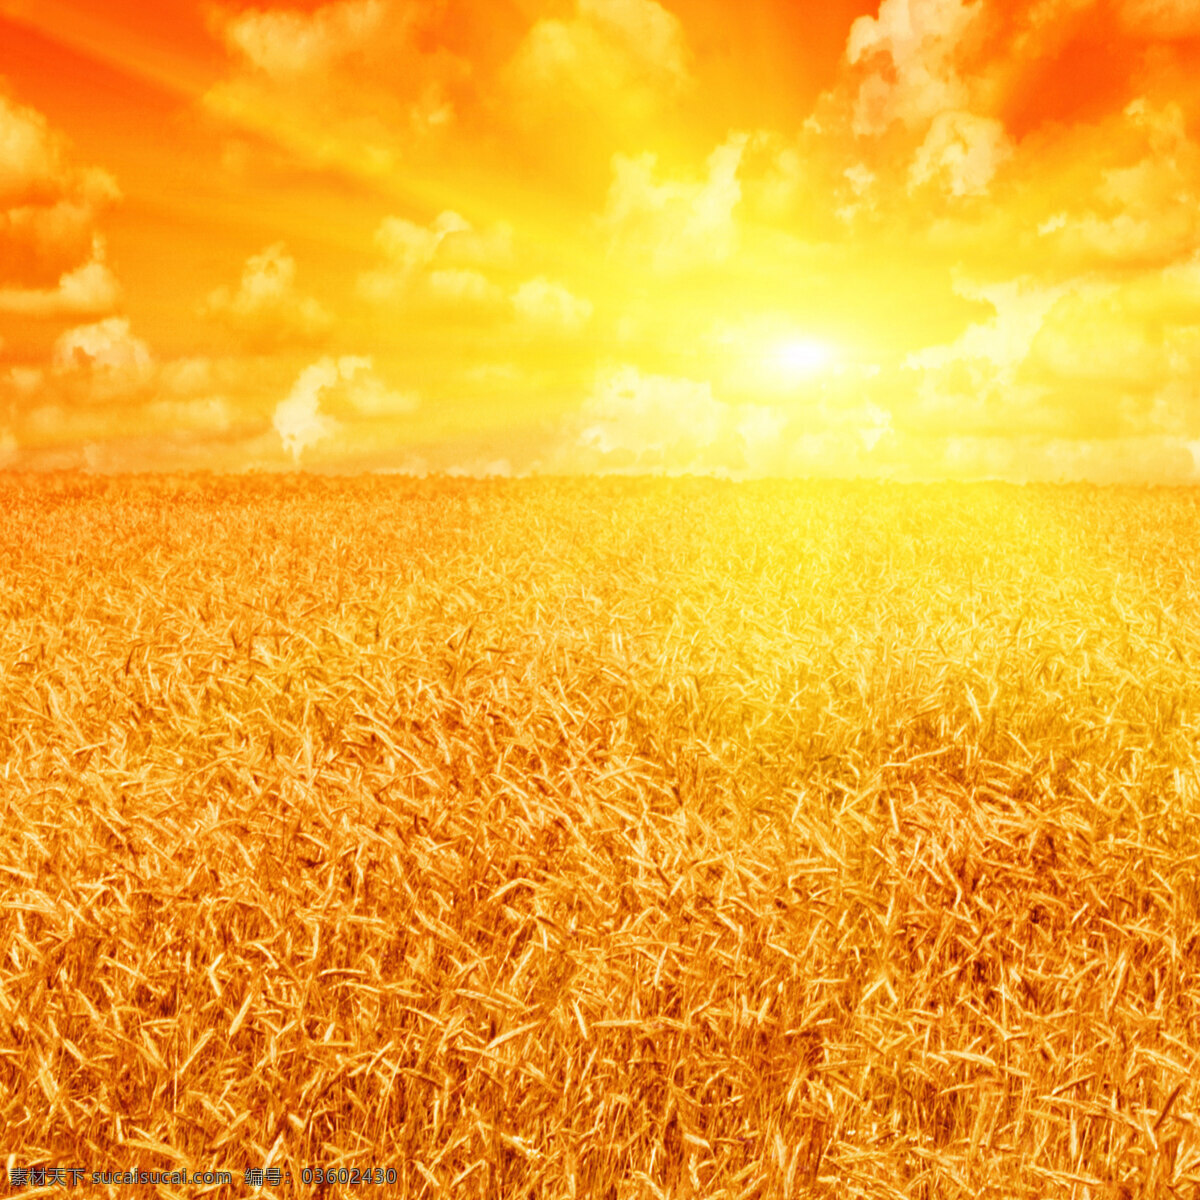 阳光 下 麦田 高清 田野 小麦 麦子 稻穗 金黄 蓝天 白云 日出 日落 黄昏 自然景观 自然风景 高清图片 自然风光